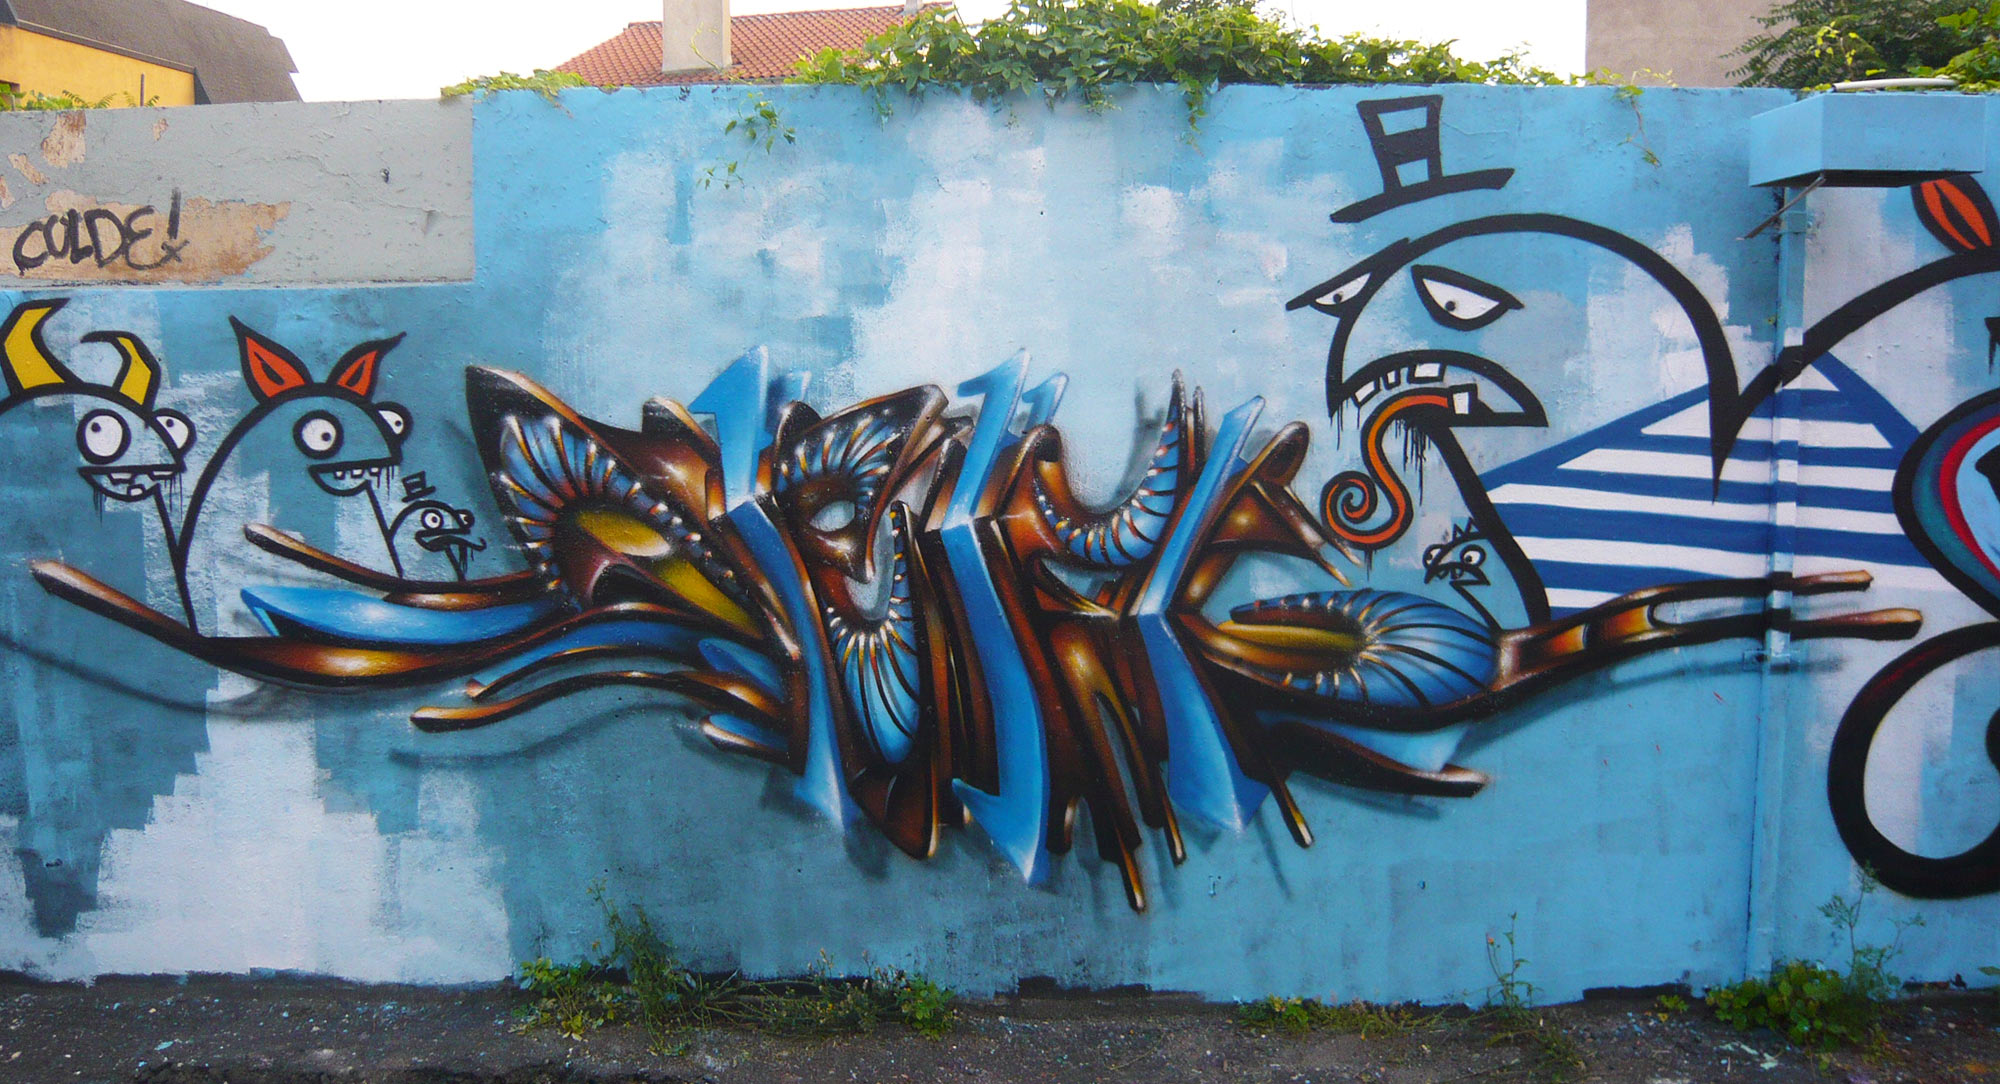 deft_golden_graffiti_1